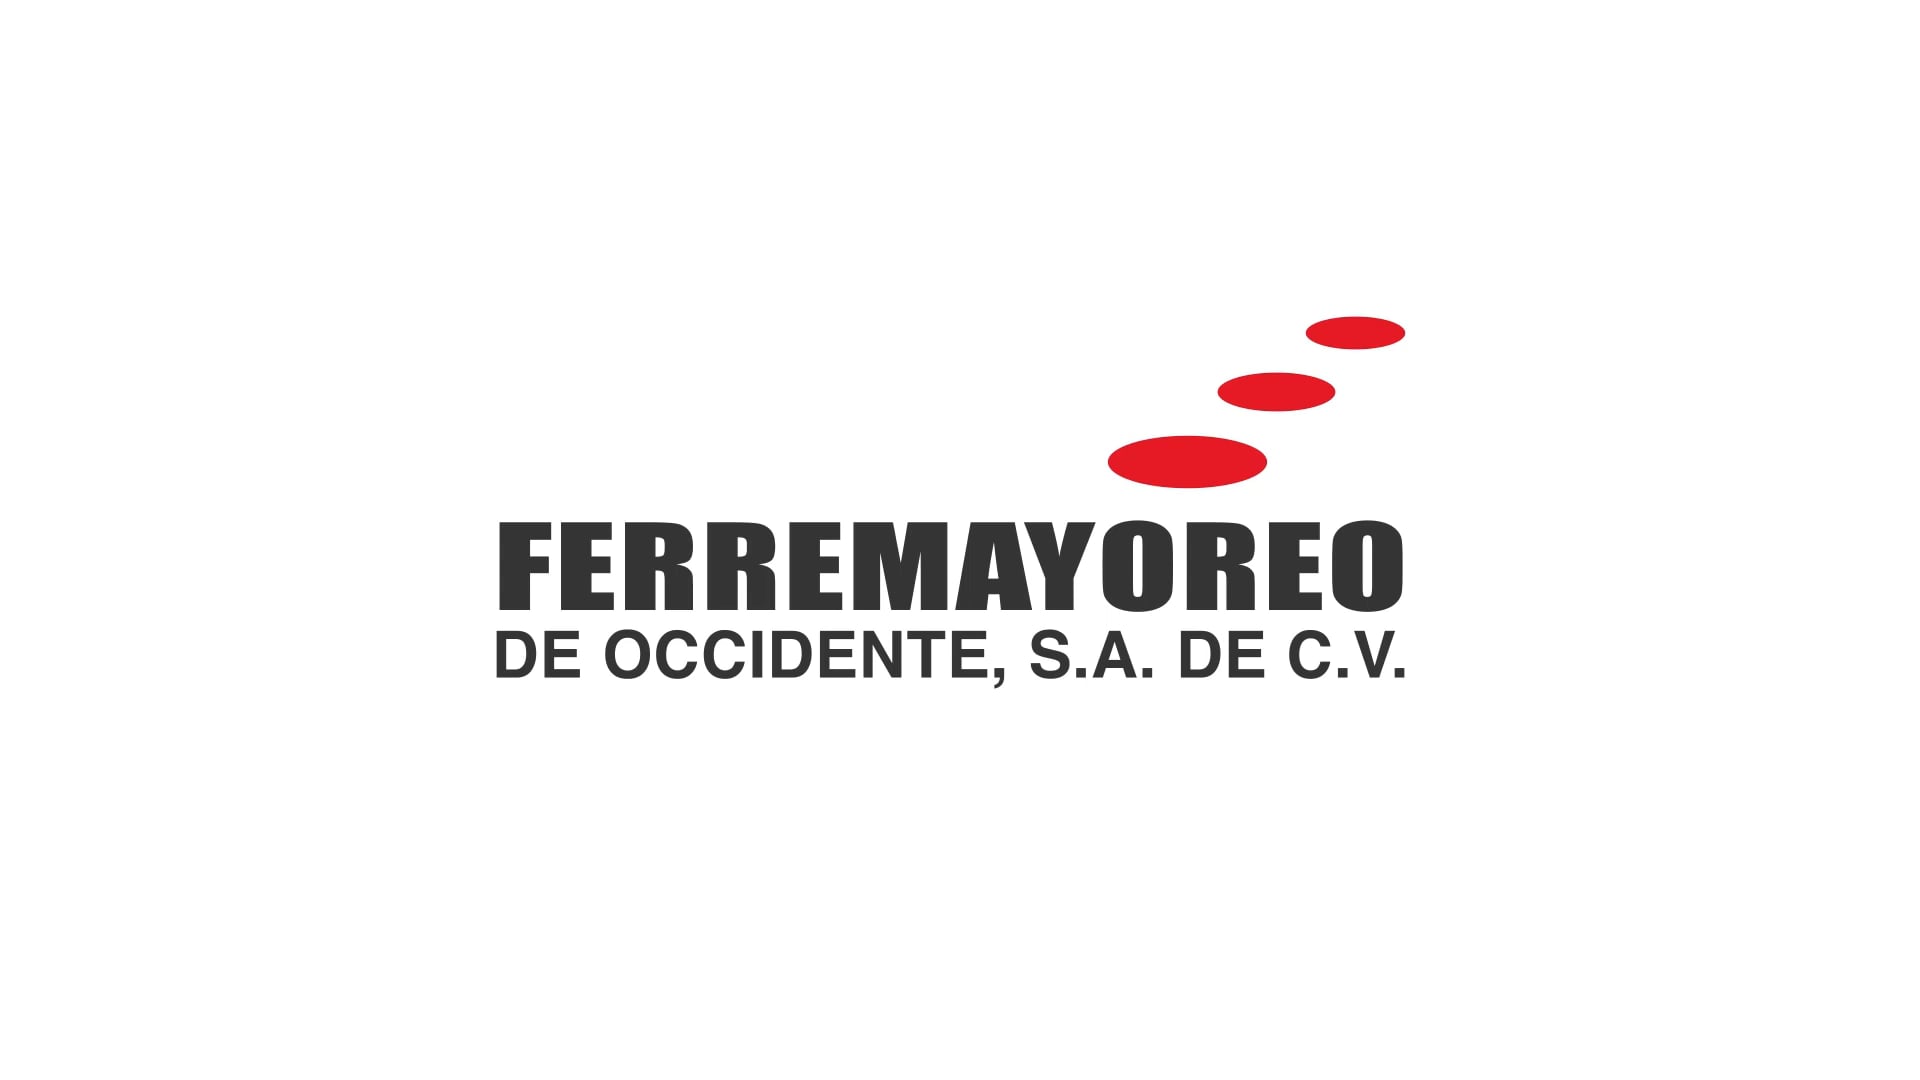 FERREMAYOREO